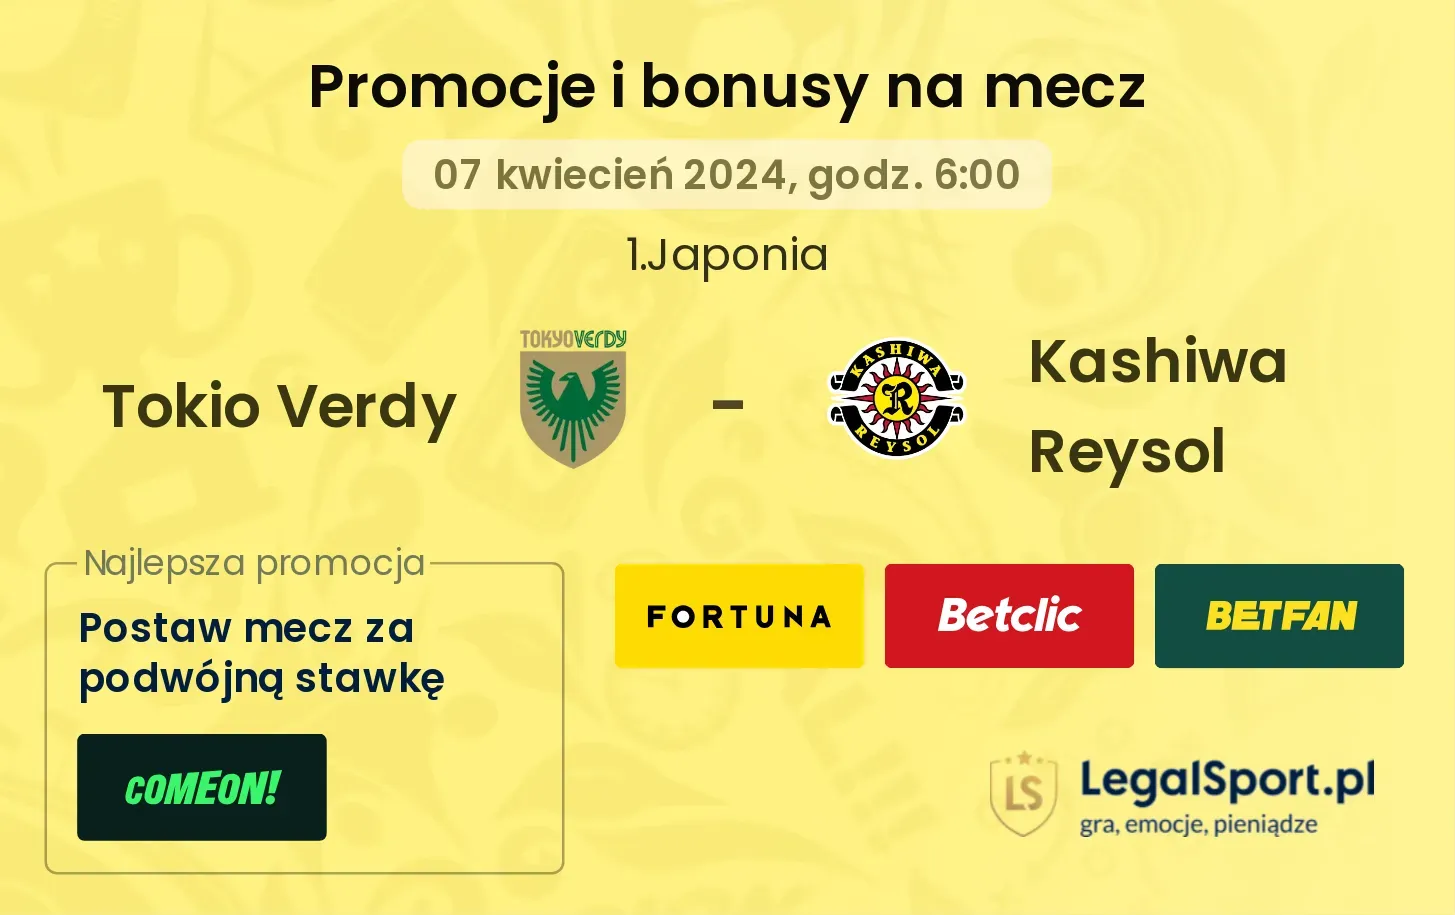 Tokio Verdy - Kashiwa Reysol promocje bonusy na mecz